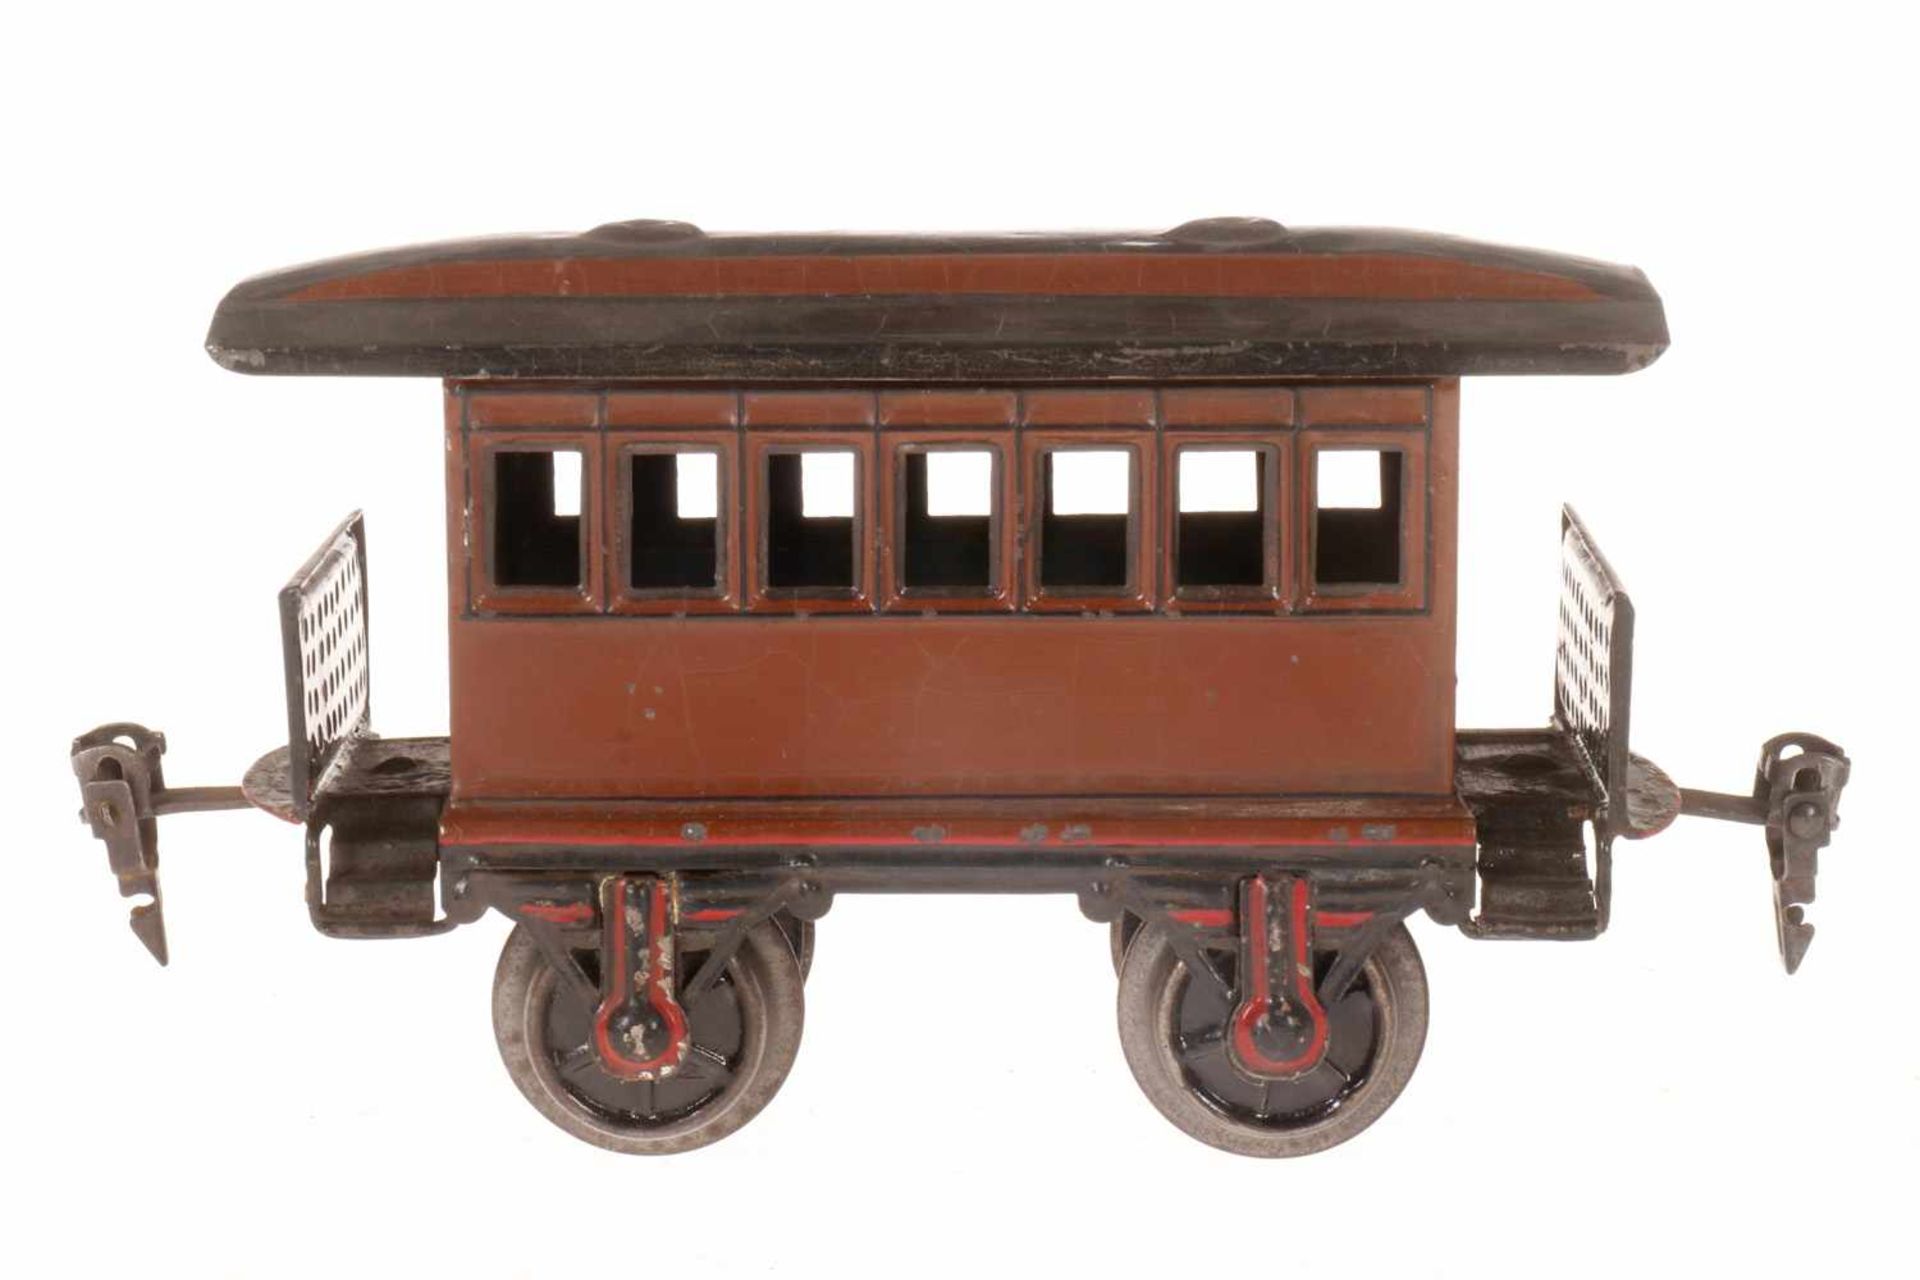 Märklin amerik. Personenwagen 1873, S 1, uralt, braun HL, je 2 Fremdbohrungen in Stirnseiten, LS und